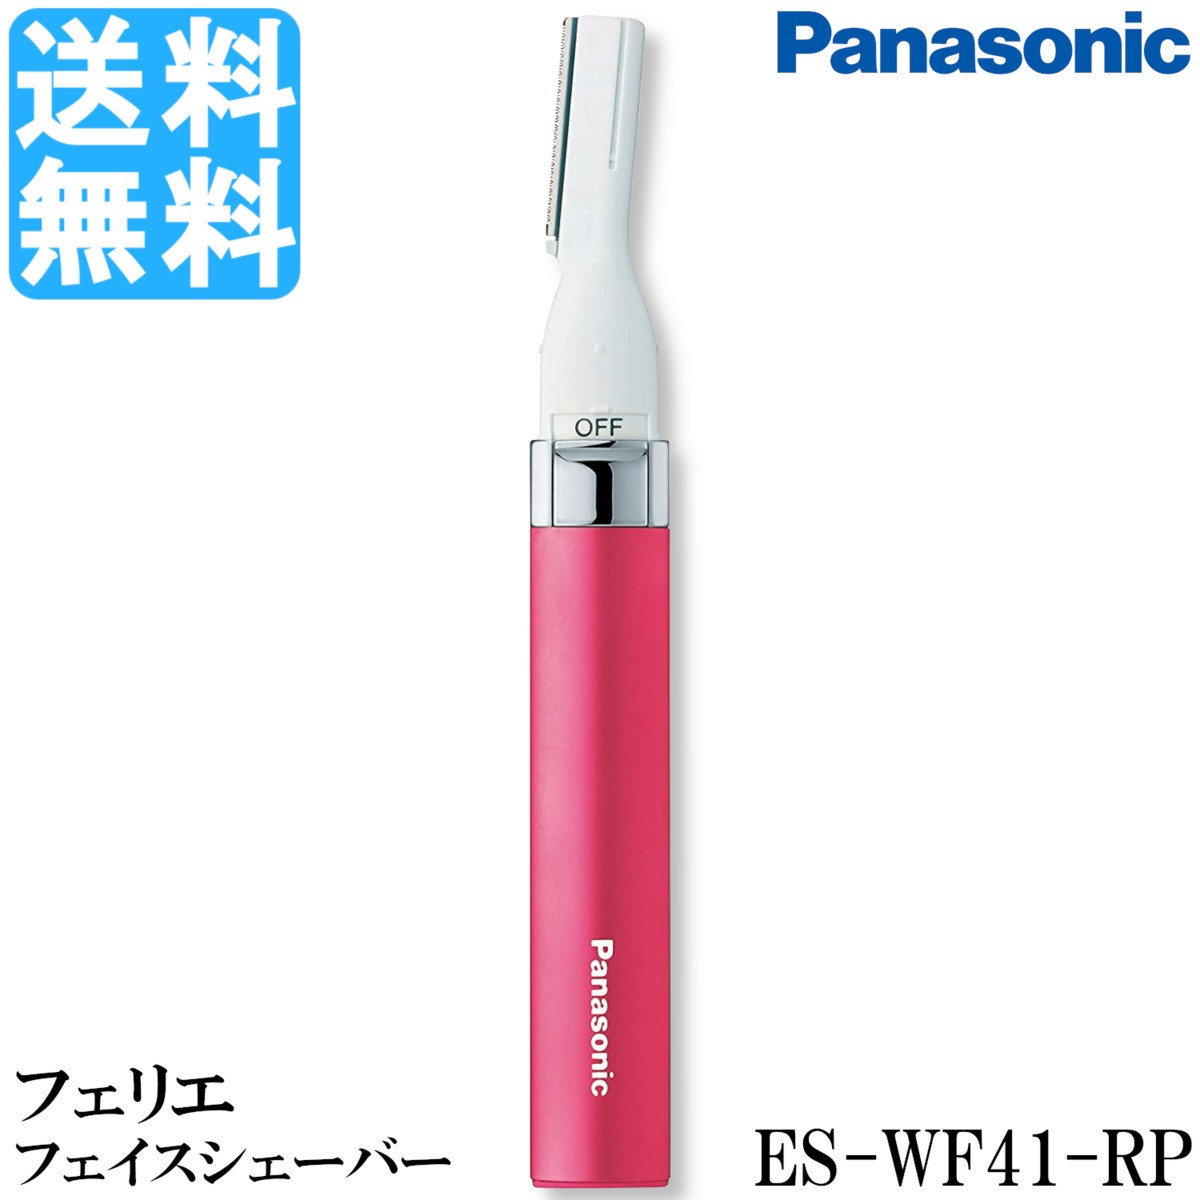  Panasonic лицо бритва Ferrie e rouge розовый ES-WF41-RP Panasonic ESWF41RP электрический женский для лица ub шерсть для mayu макияж бесплатная доставка 